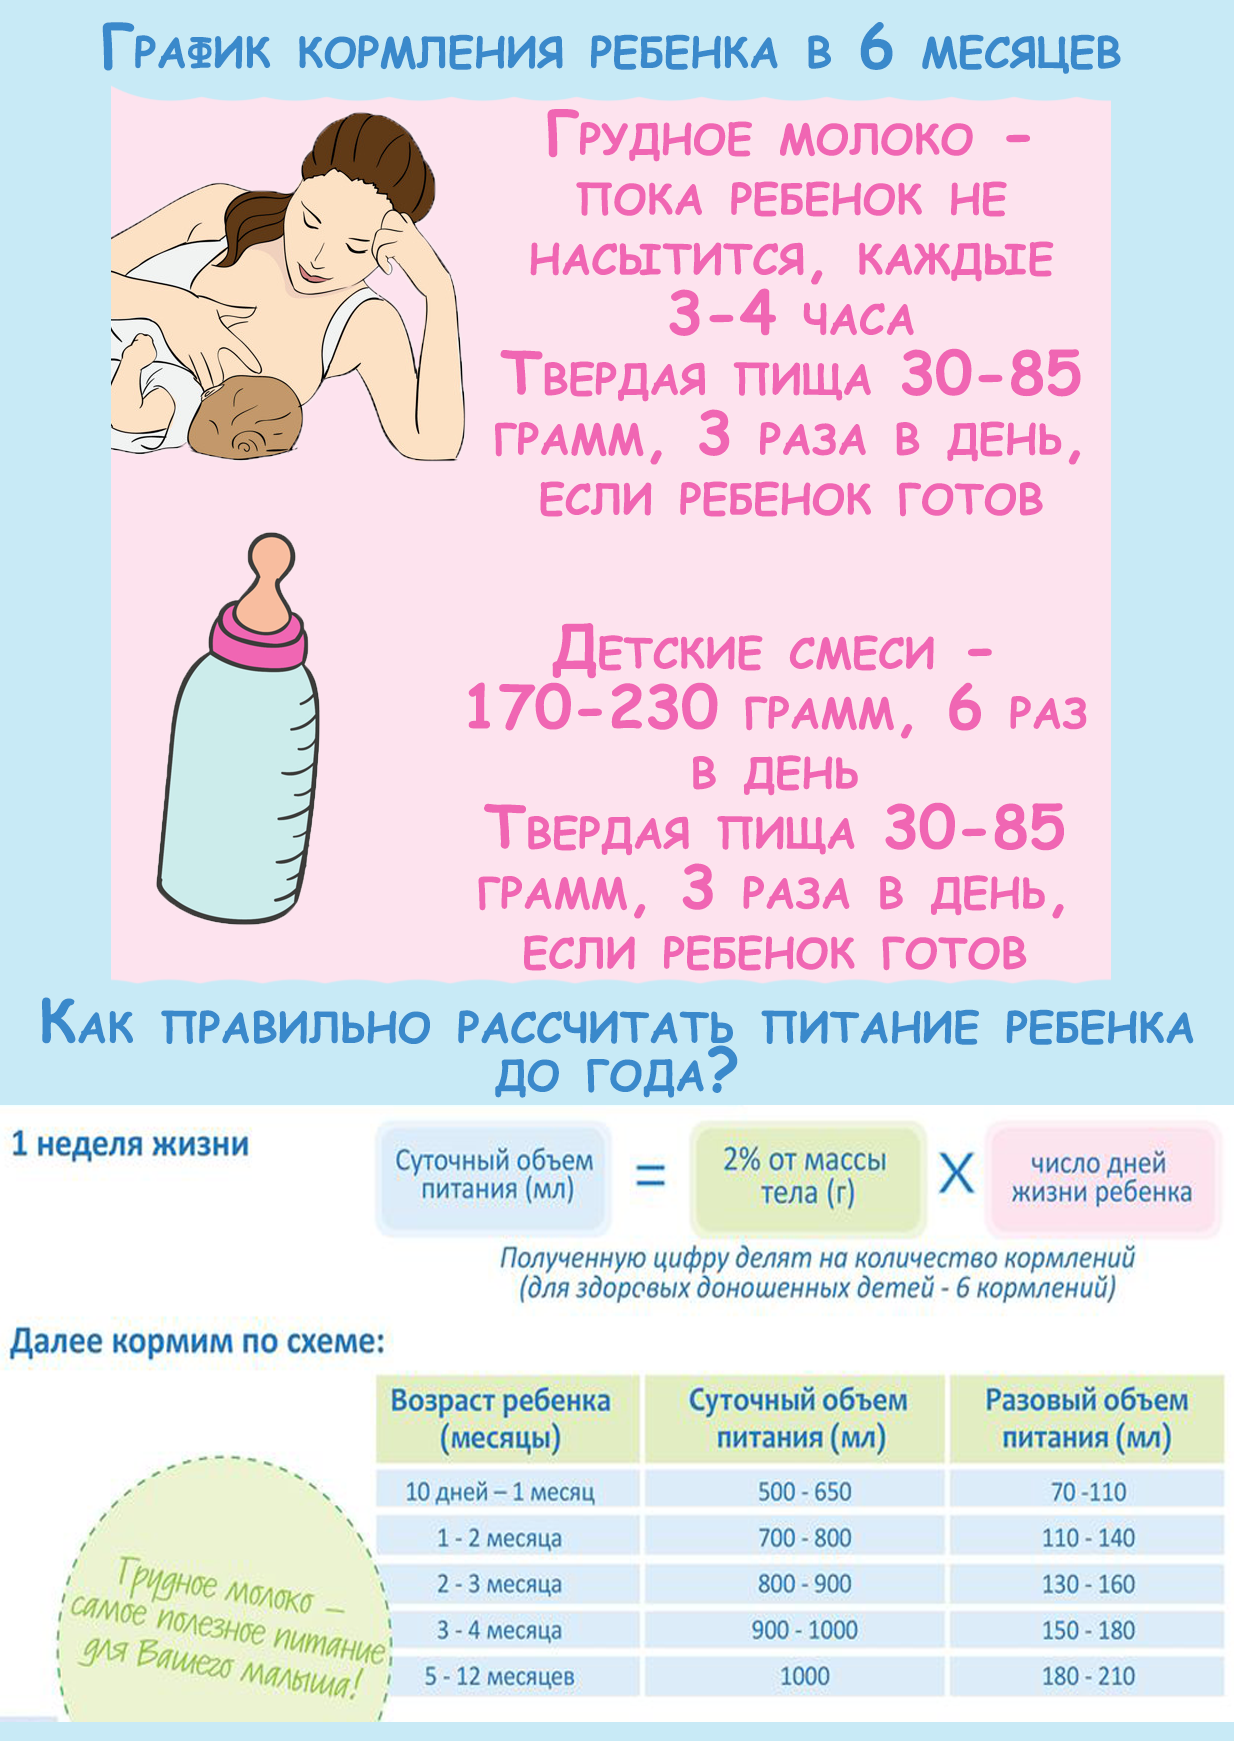 Доктор комаровский о развитии новорожденных по месяцам: что должен уметь ребенок до года, мальчики и девочки